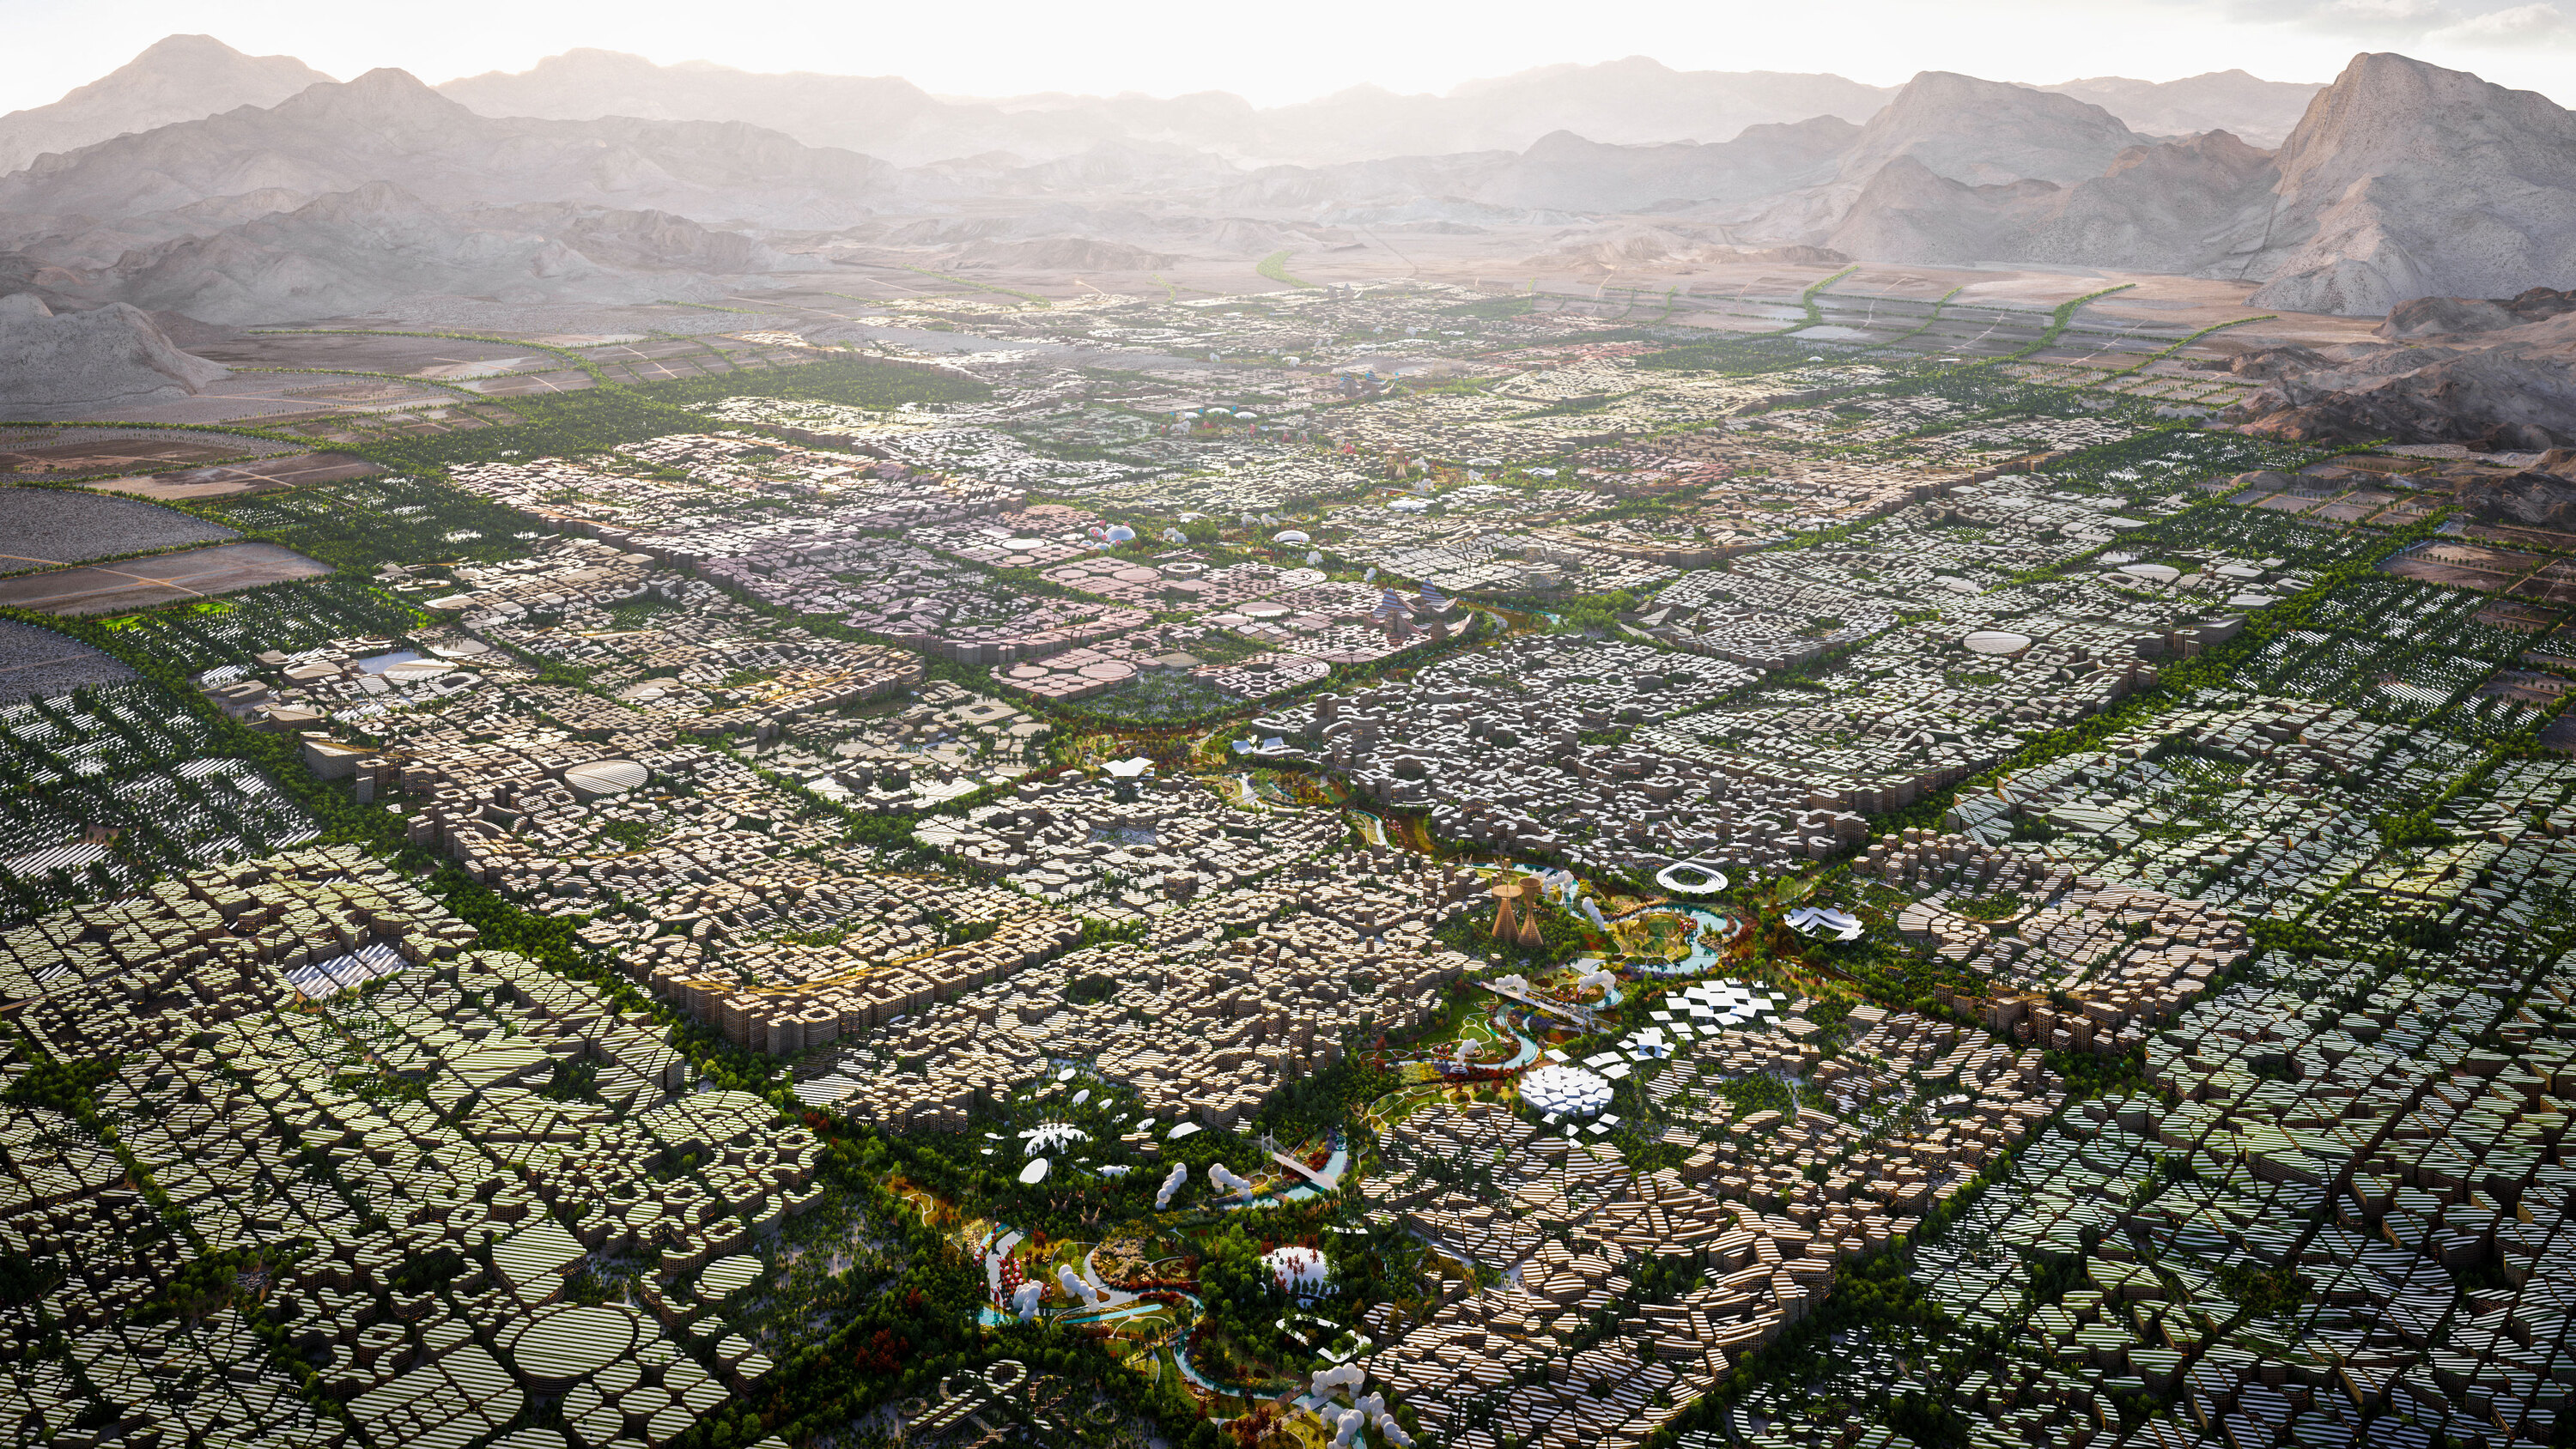 Telosa 的終極目標是建造出能容納 500 萬居民的漠地烏托邦城市。